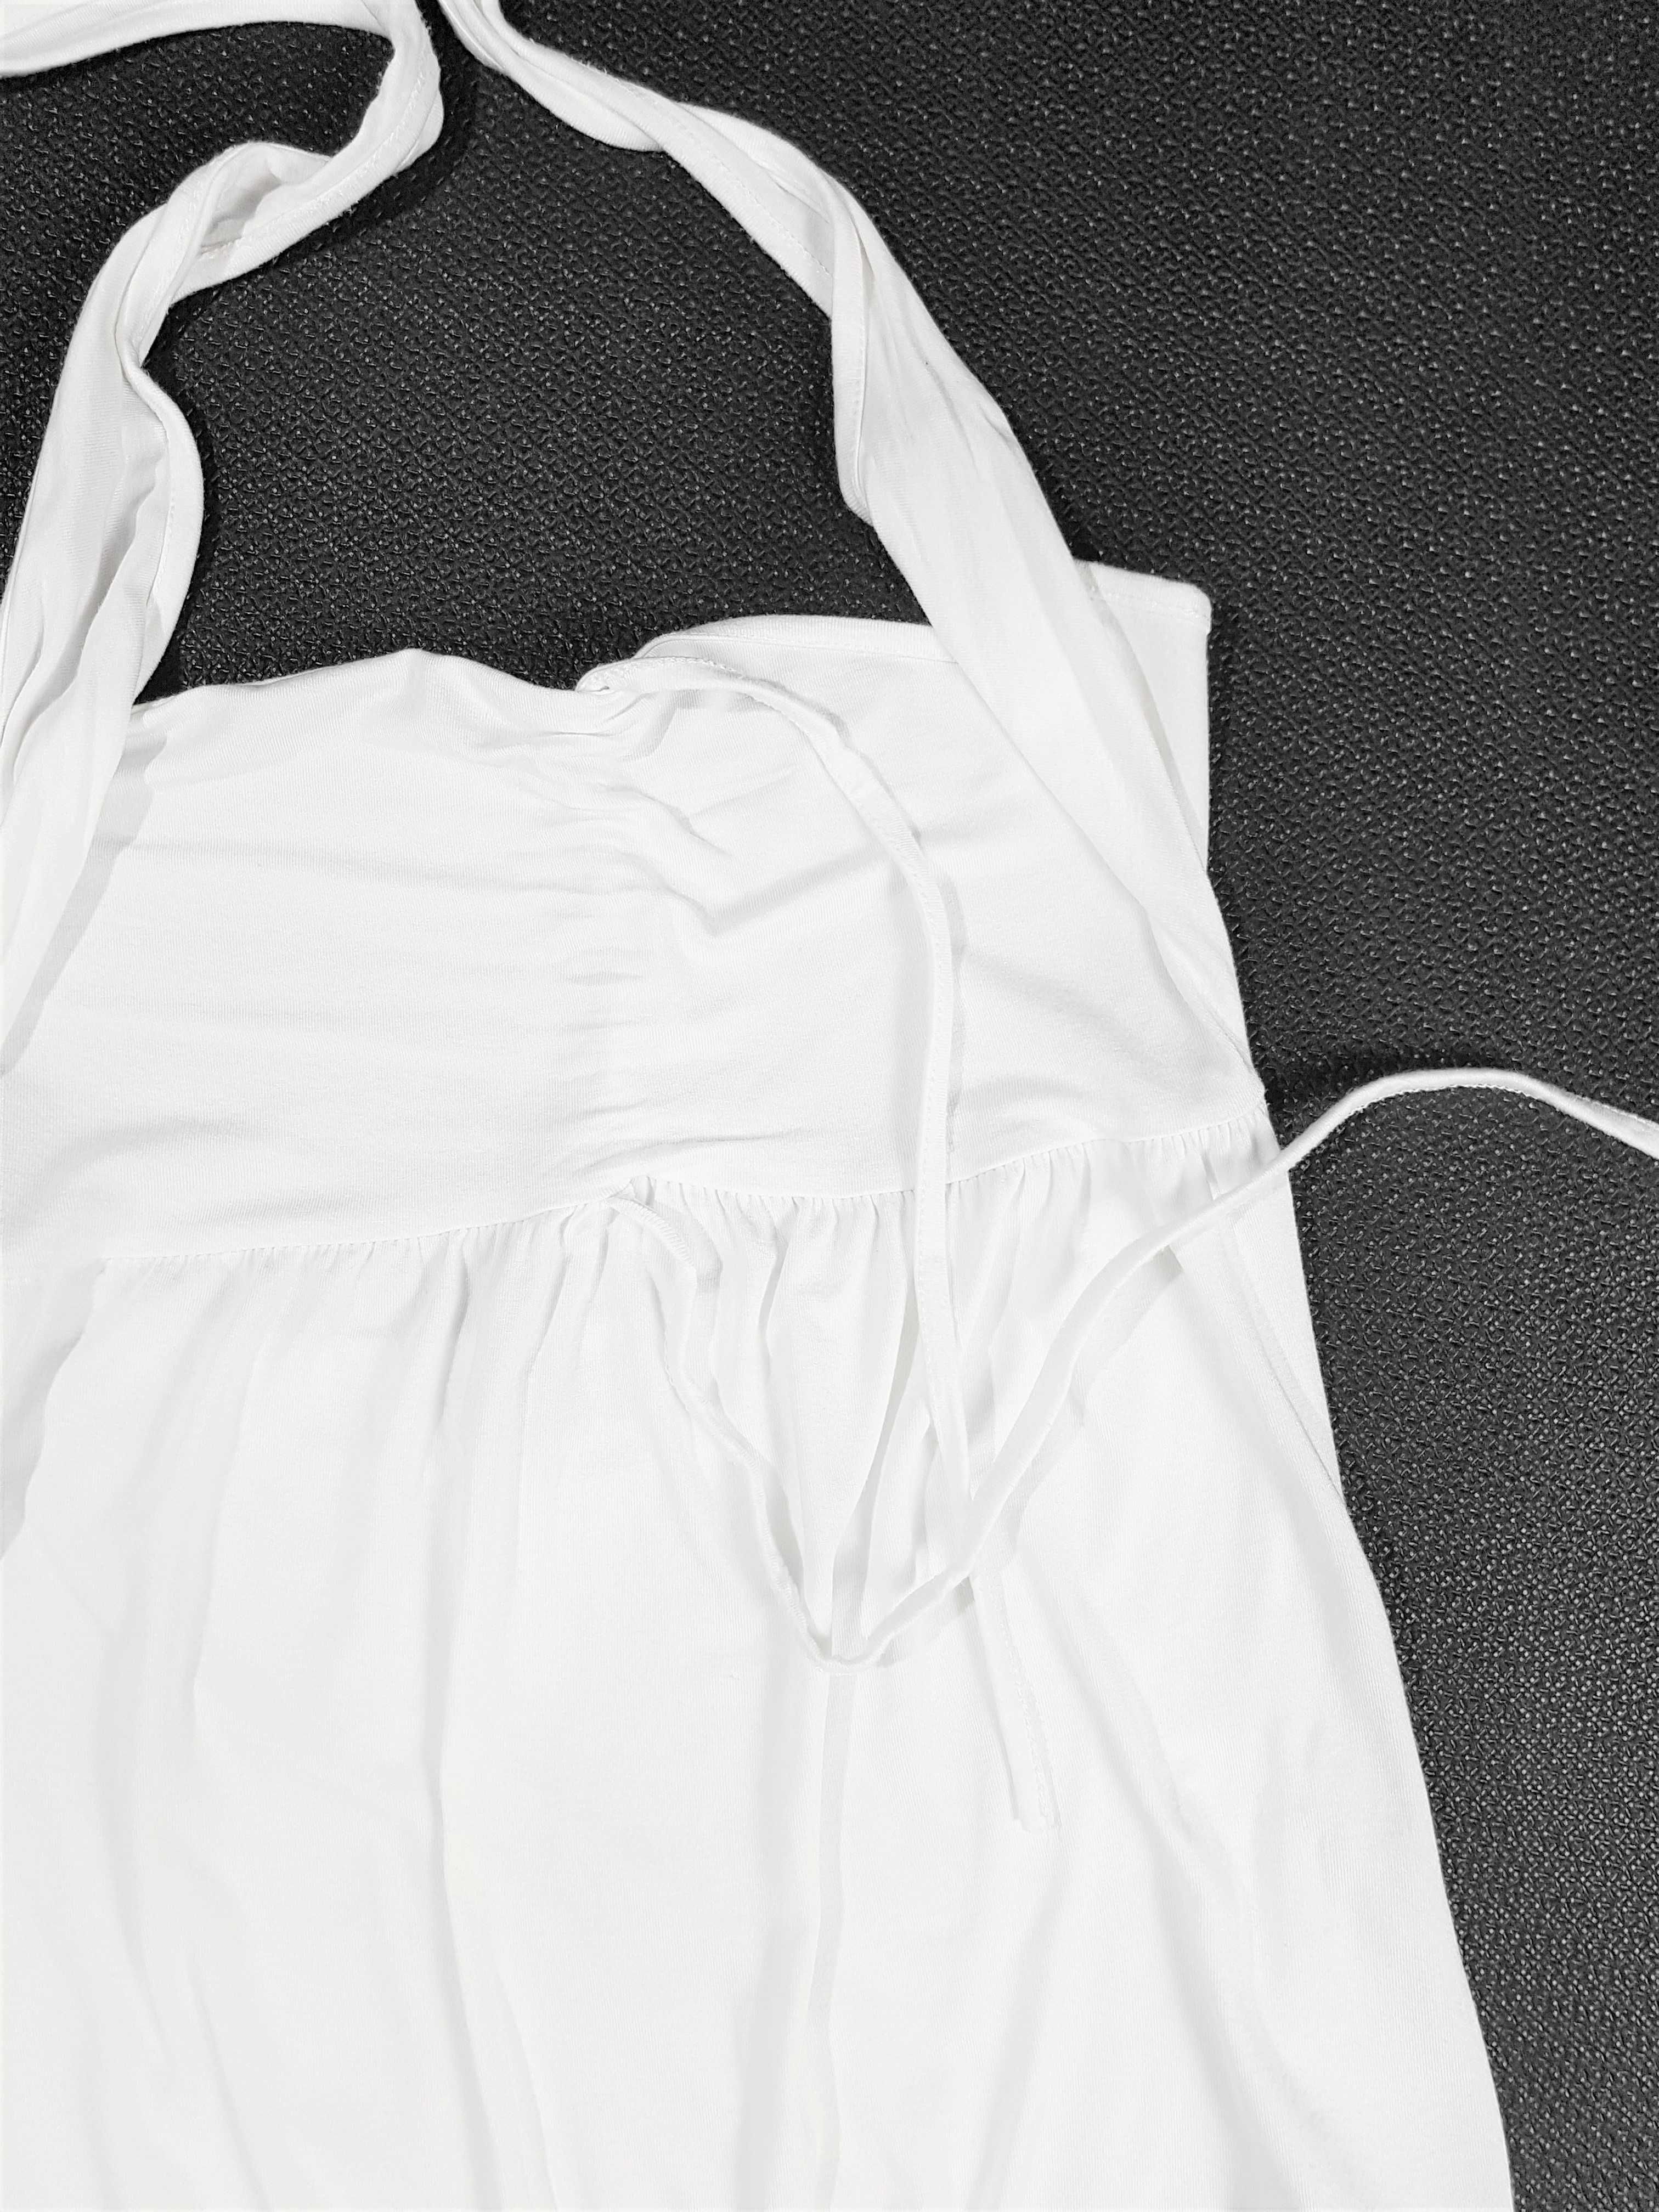 biała bluza z wiskozy wiązana oxyd 36 S 38 M odkryte ramiona